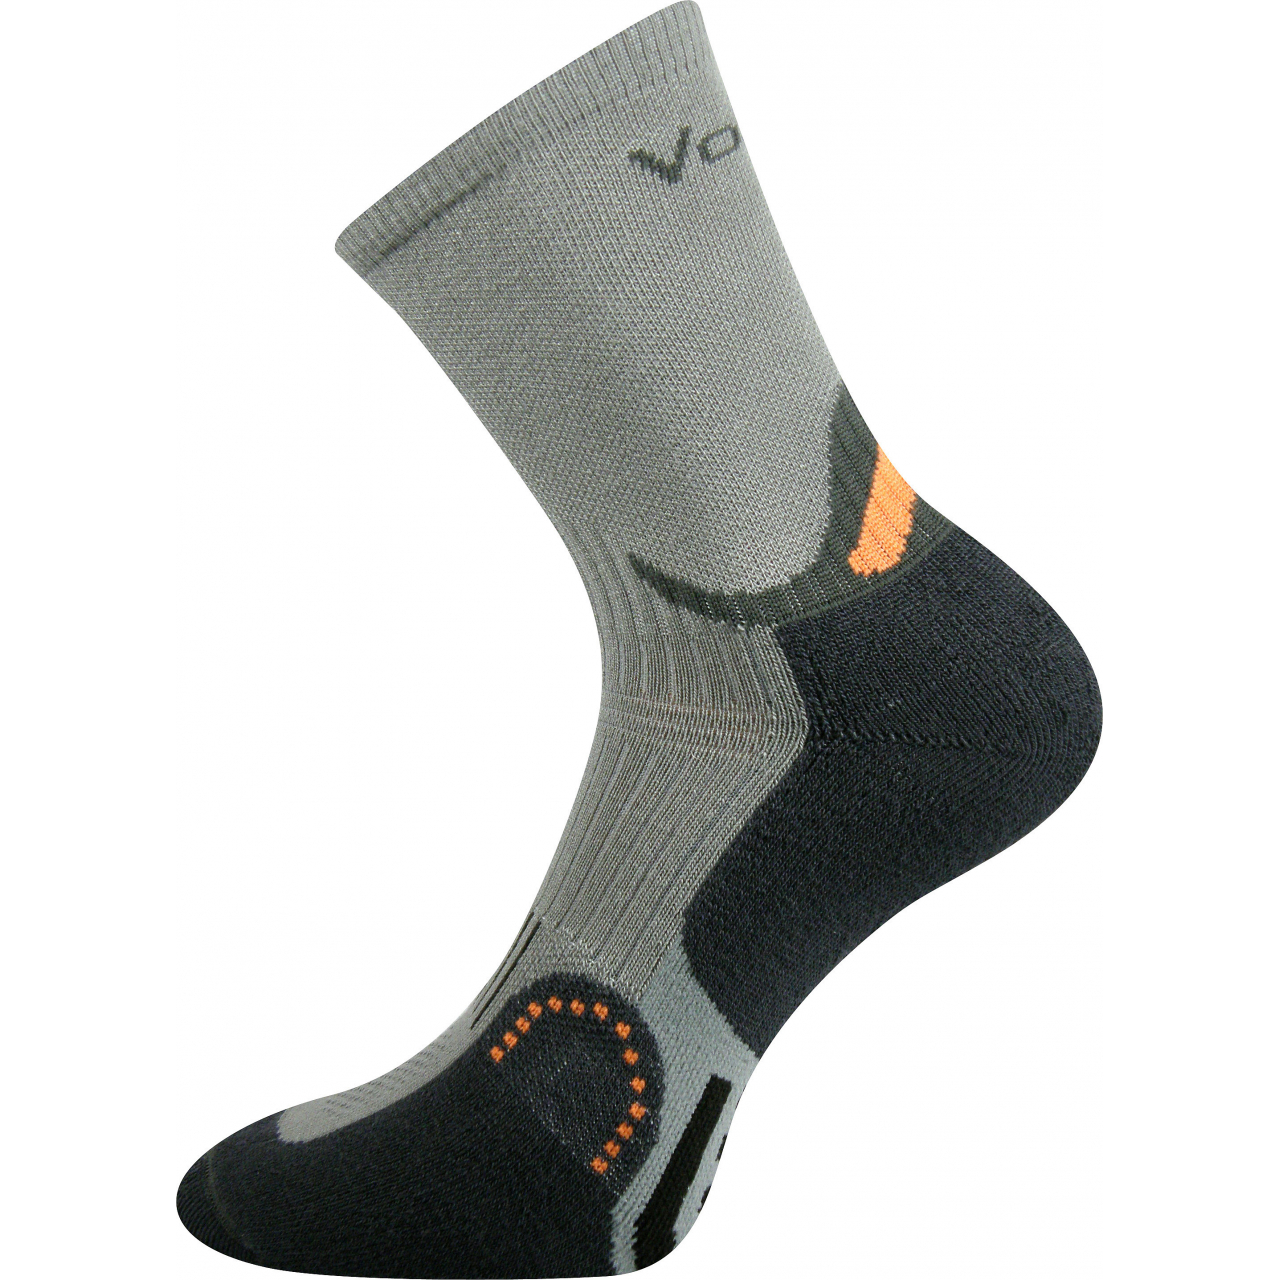 Ponožky sportovní Voxx Actros - šedé-černé, 35-38